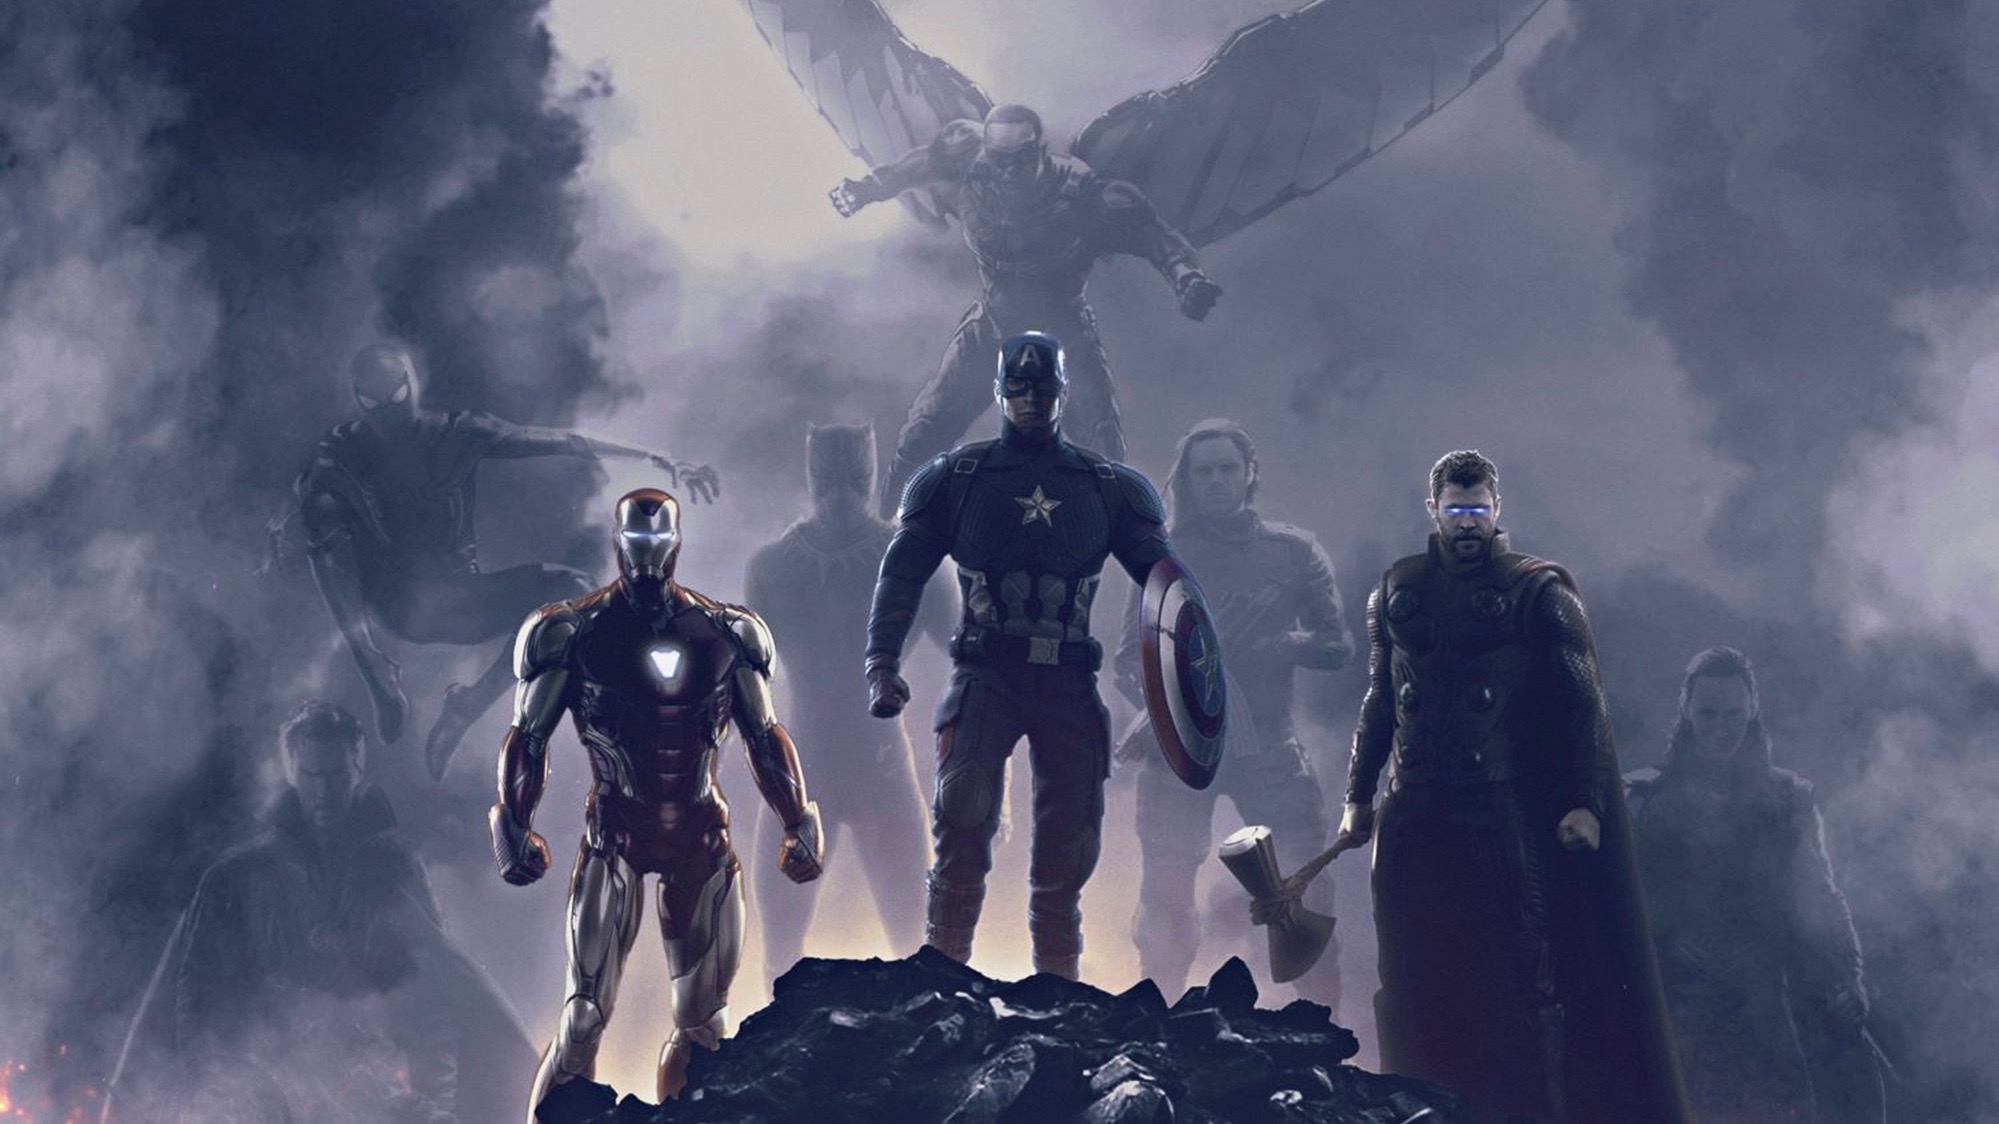 HD wallpaper: The Avengers, Avengers Endgame, Spider-Man, Tom Holland |  Wallpaper Flare